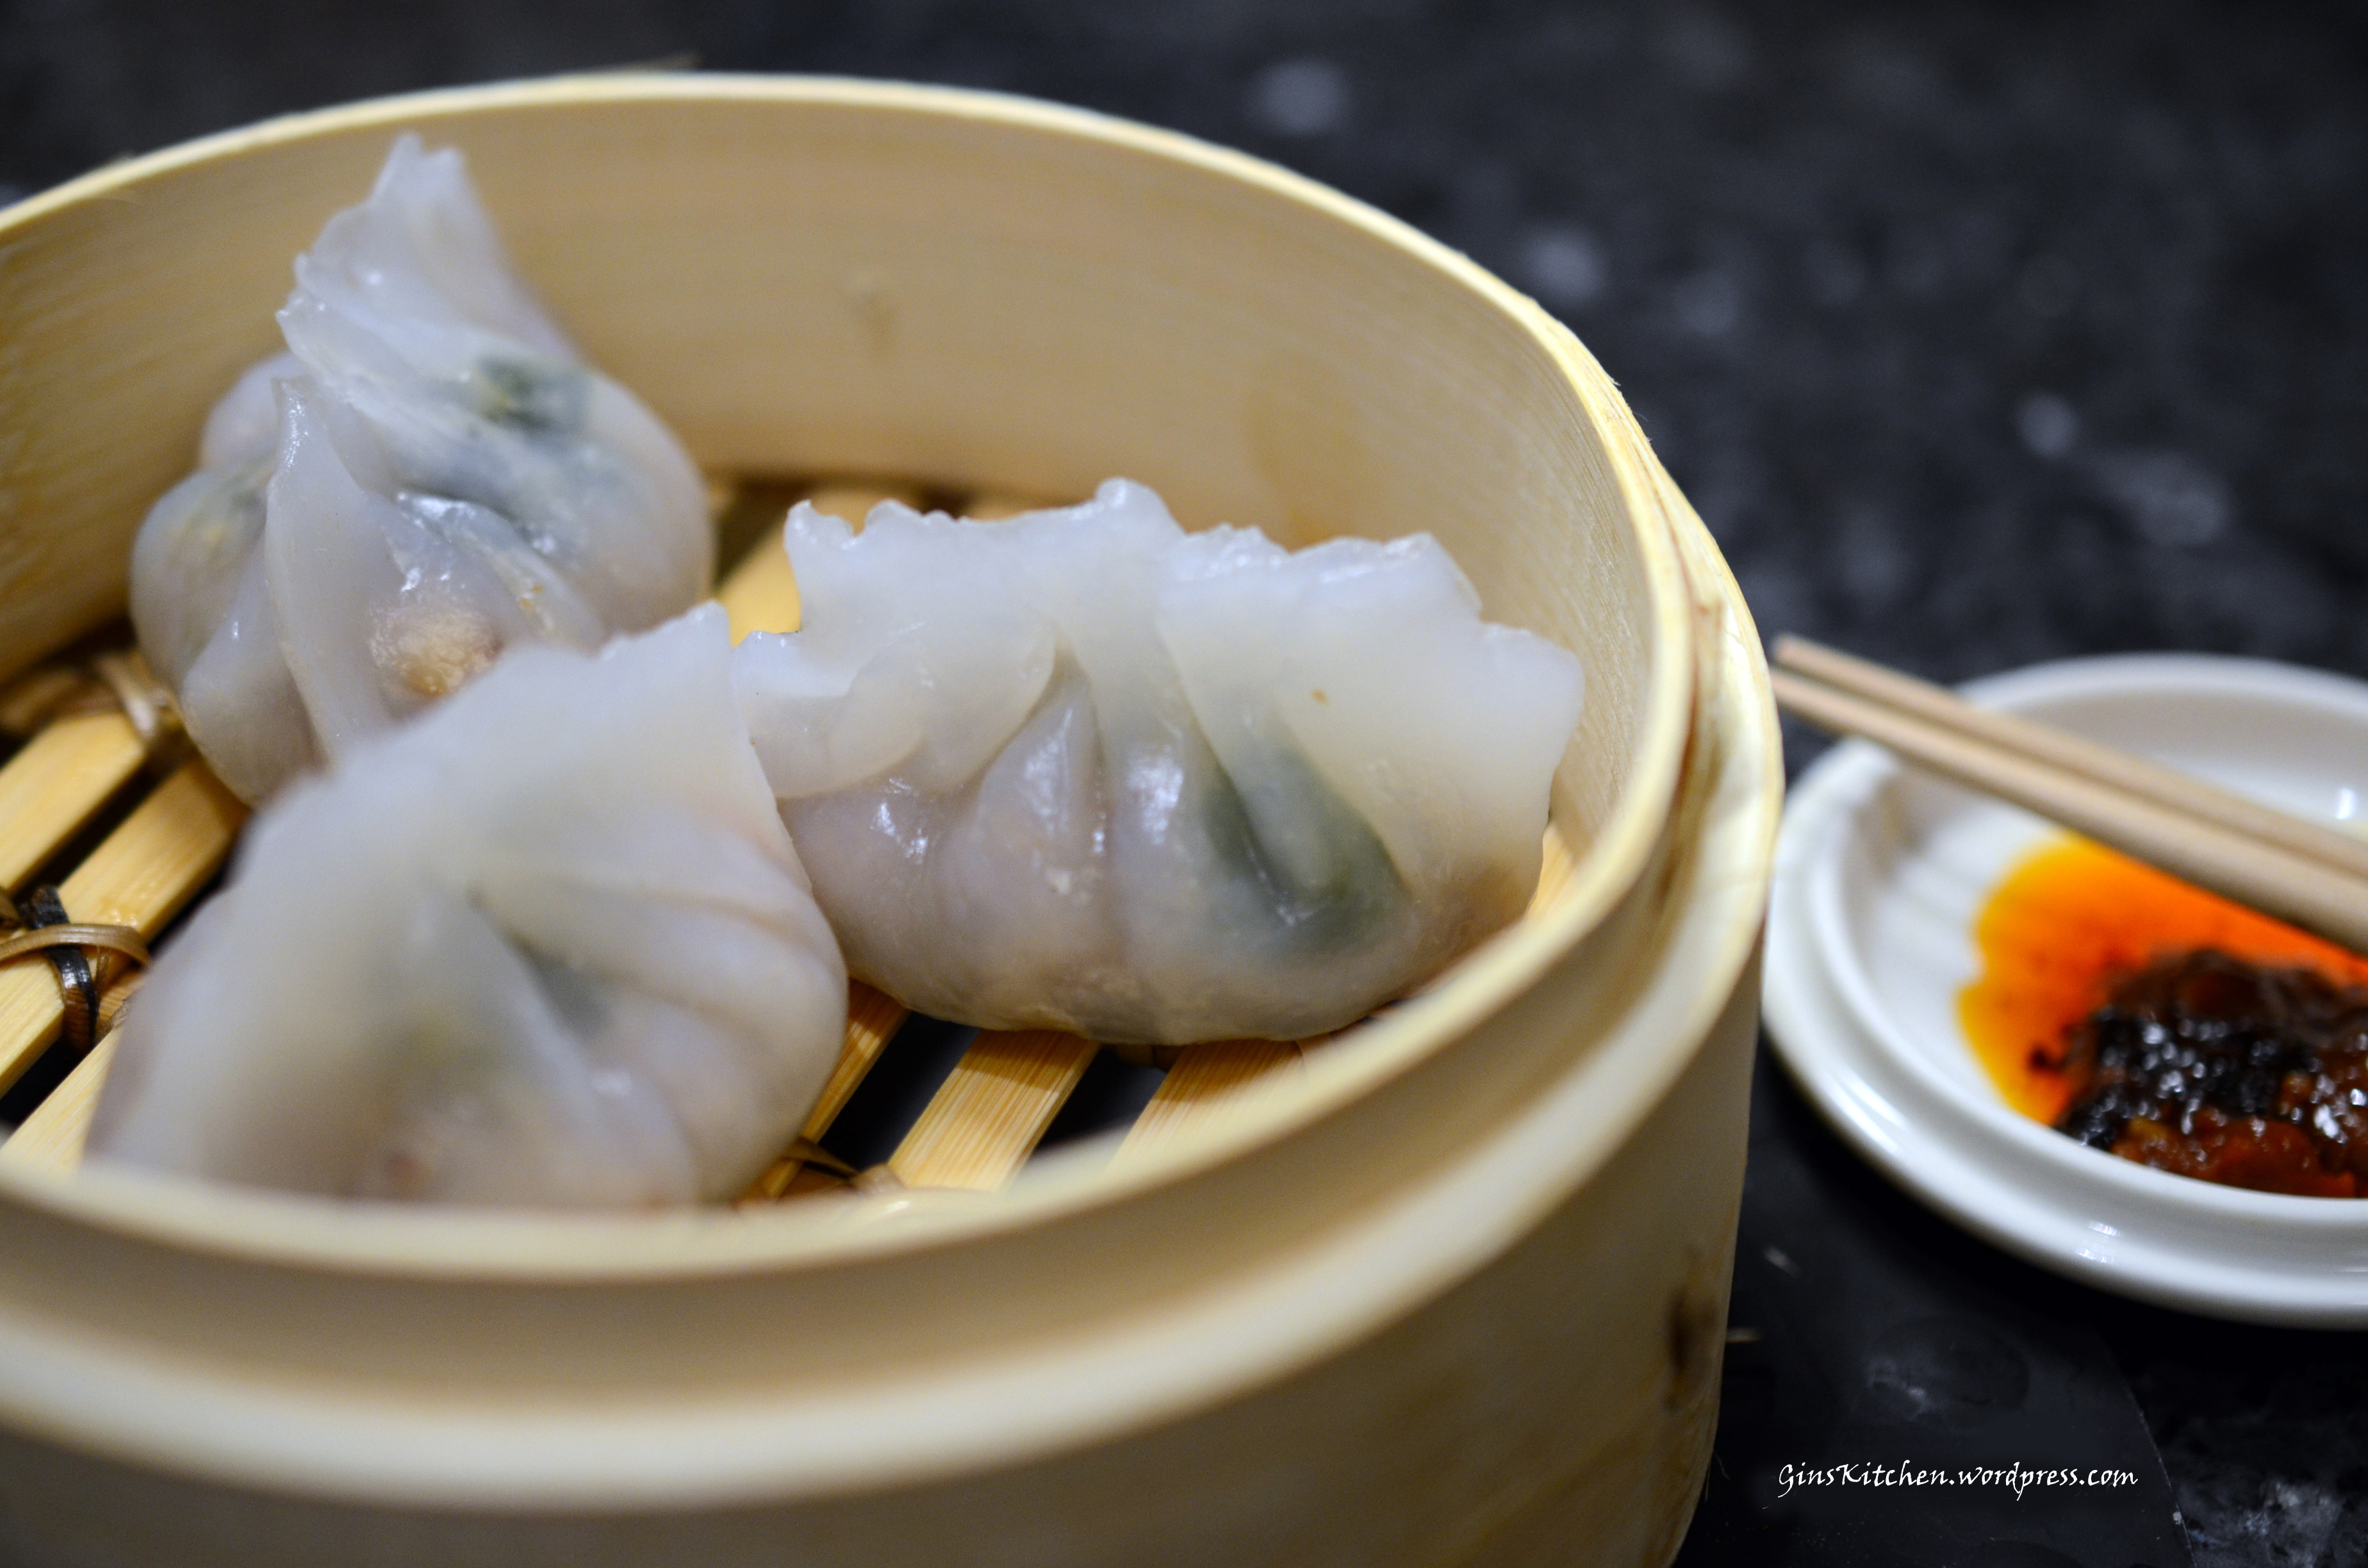 Chiu Chow Fun Gor (Teochew Dumplings) 潮州粉果 | GinsKitchen